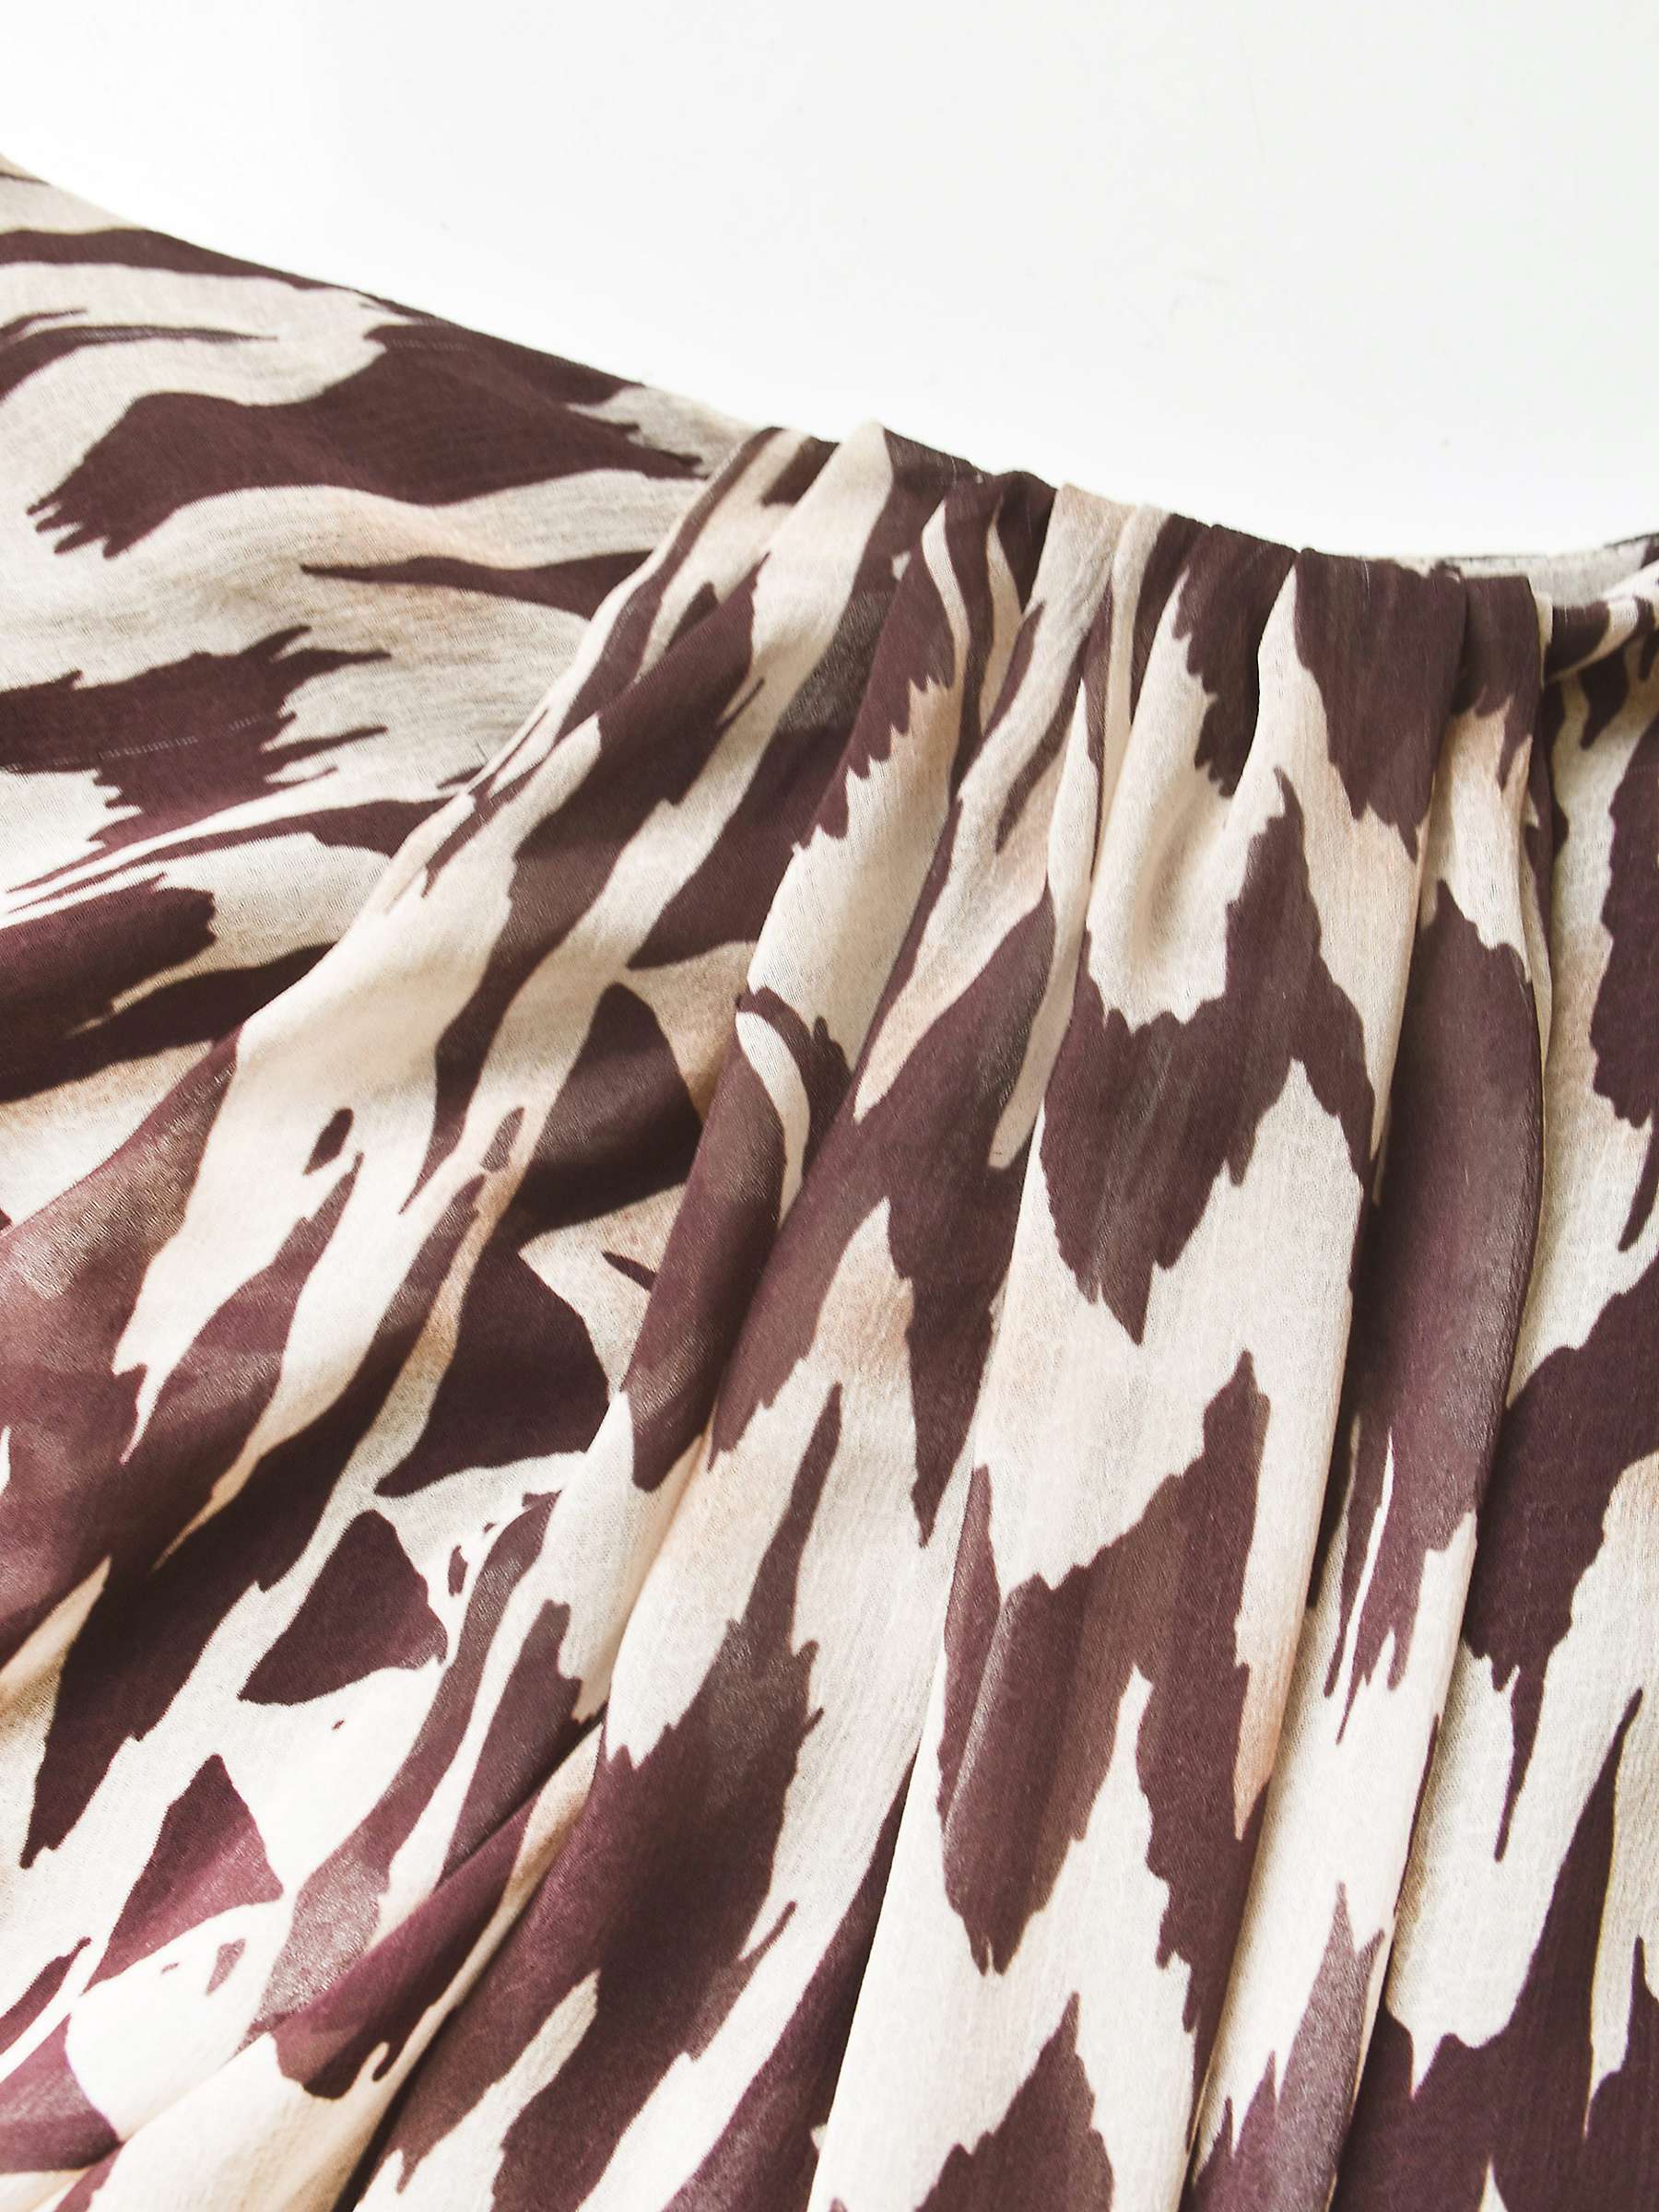 Buy Ro&Zo Chiffon Midi Skirt, Brown Online at johnlewis.com